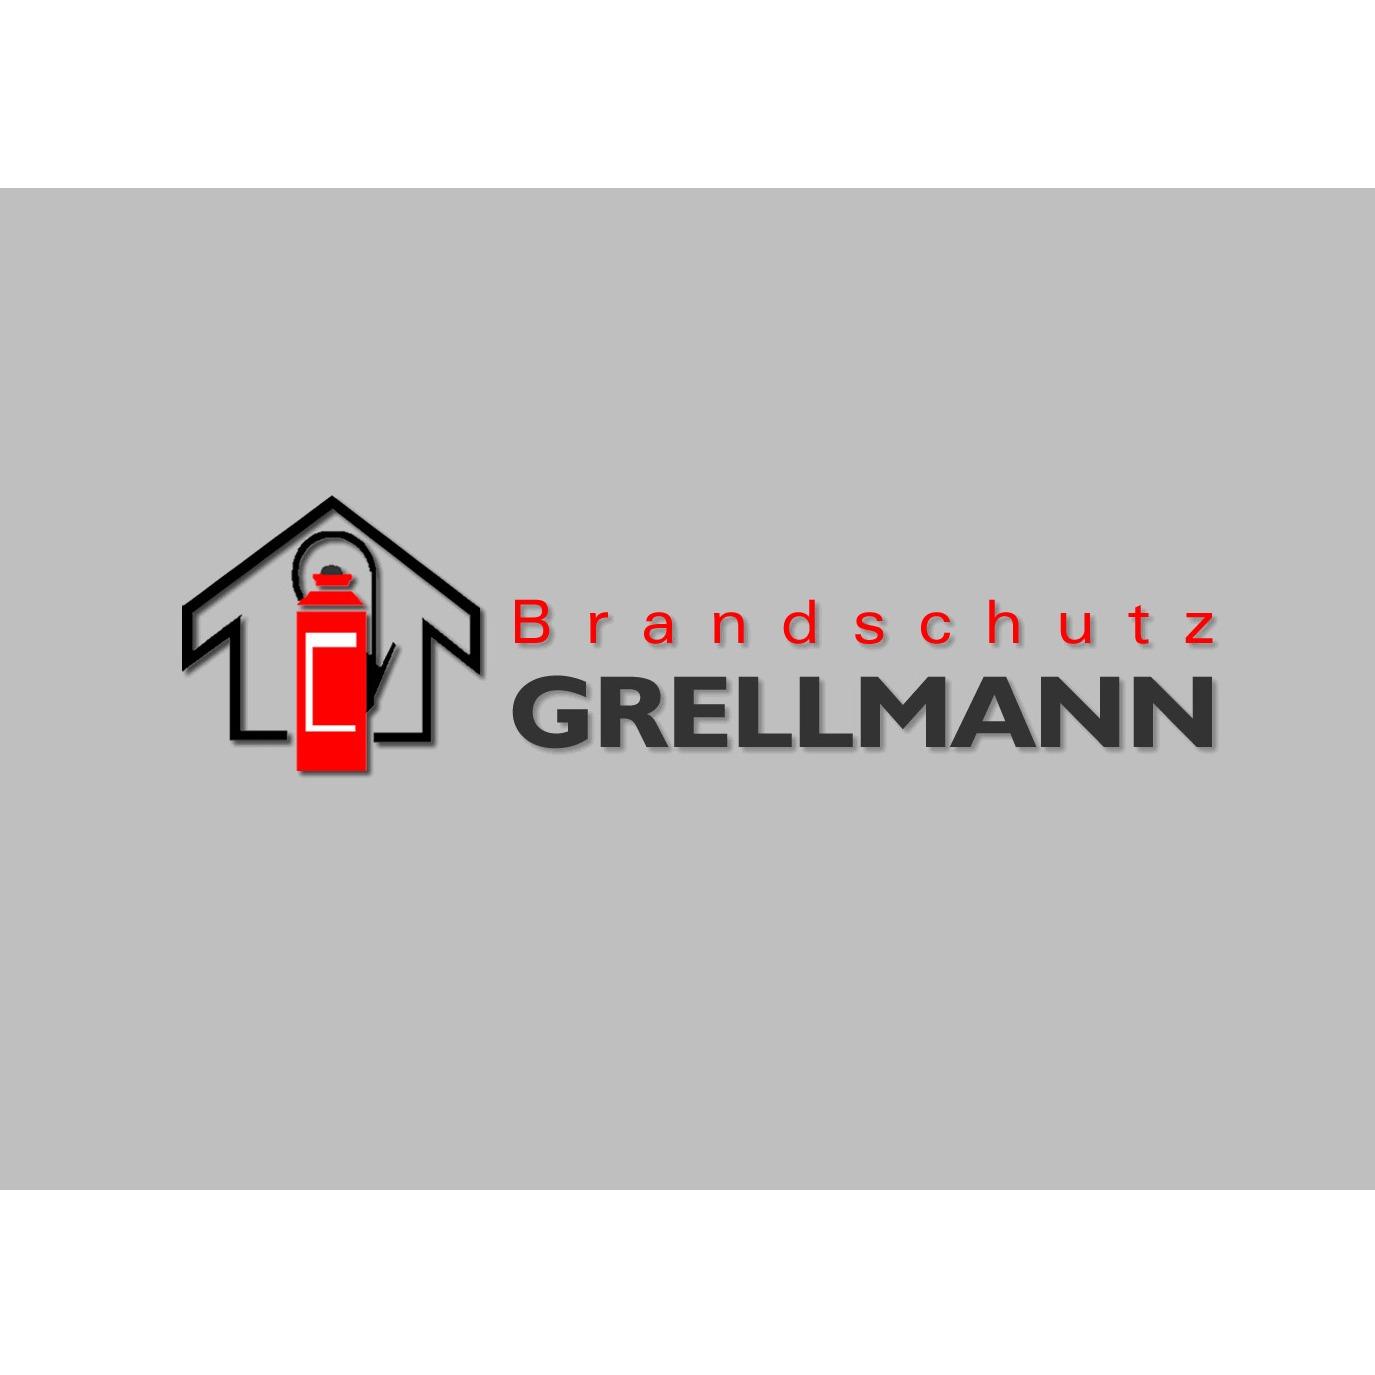 Brandschutz Grellmann GmbH